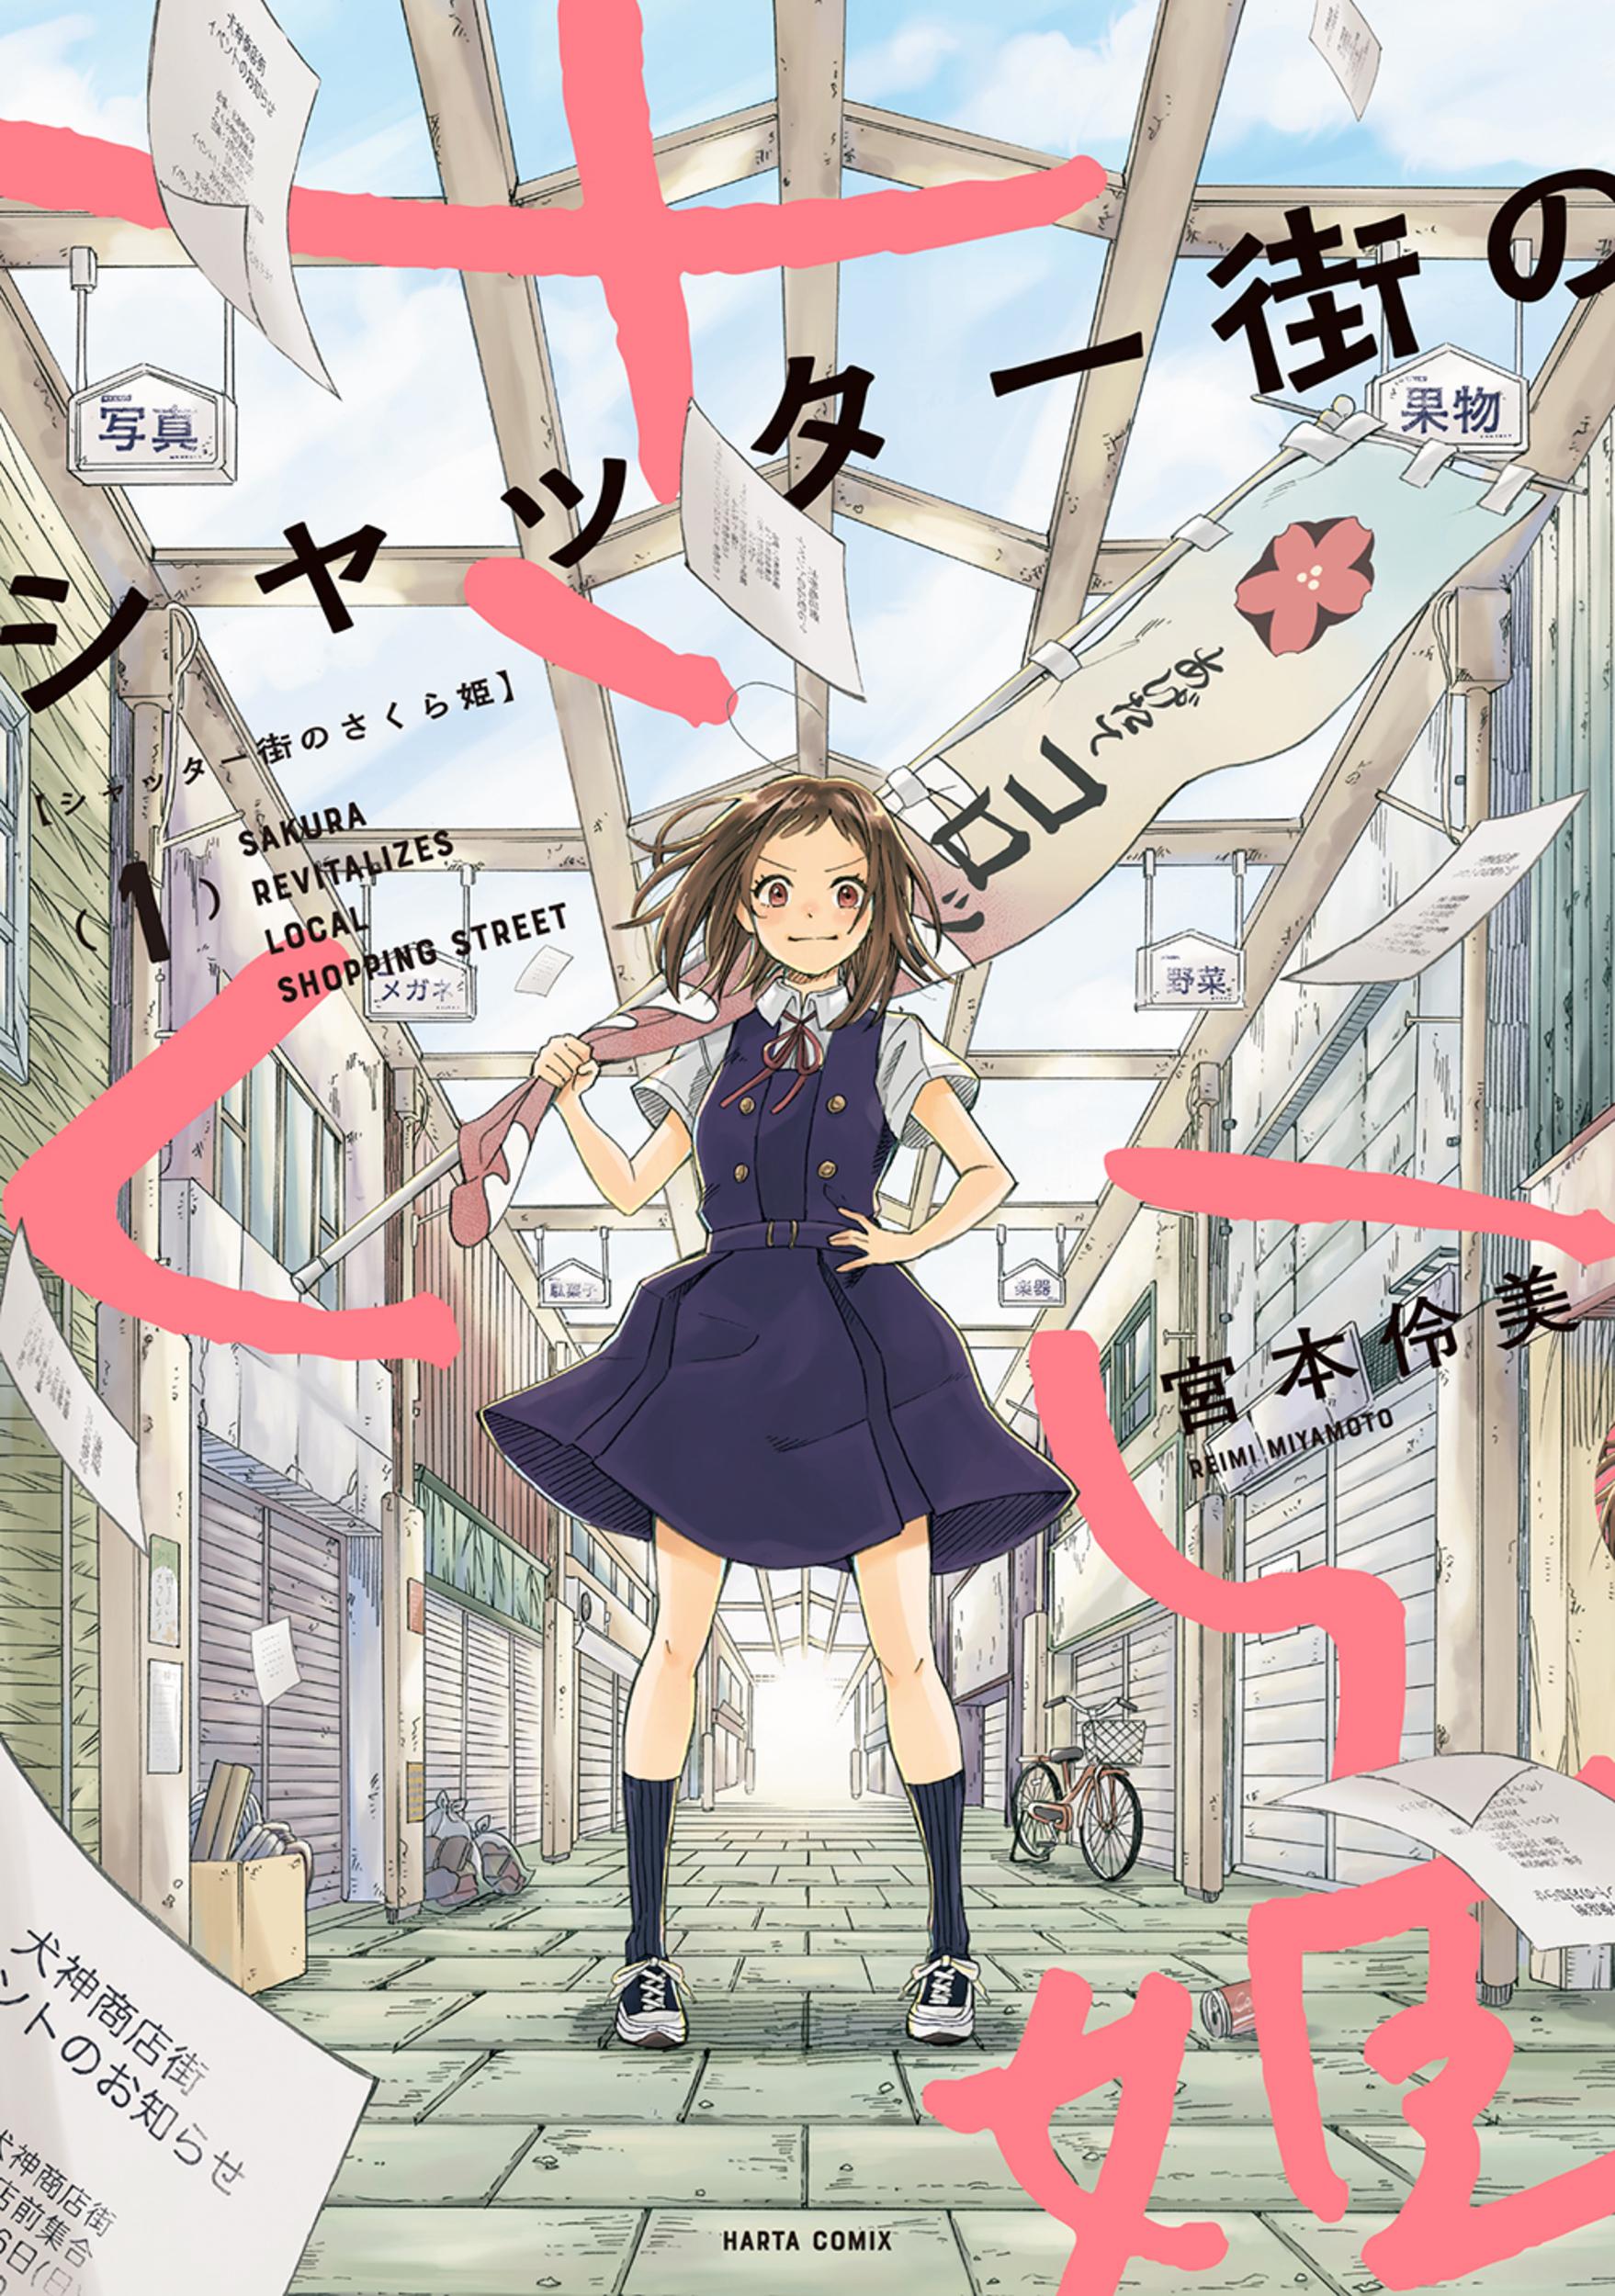 Kadokawa Haruta Comics Reimi Miyamoto Sakura princess of the shutter town 1  | Mandarake Online Shop